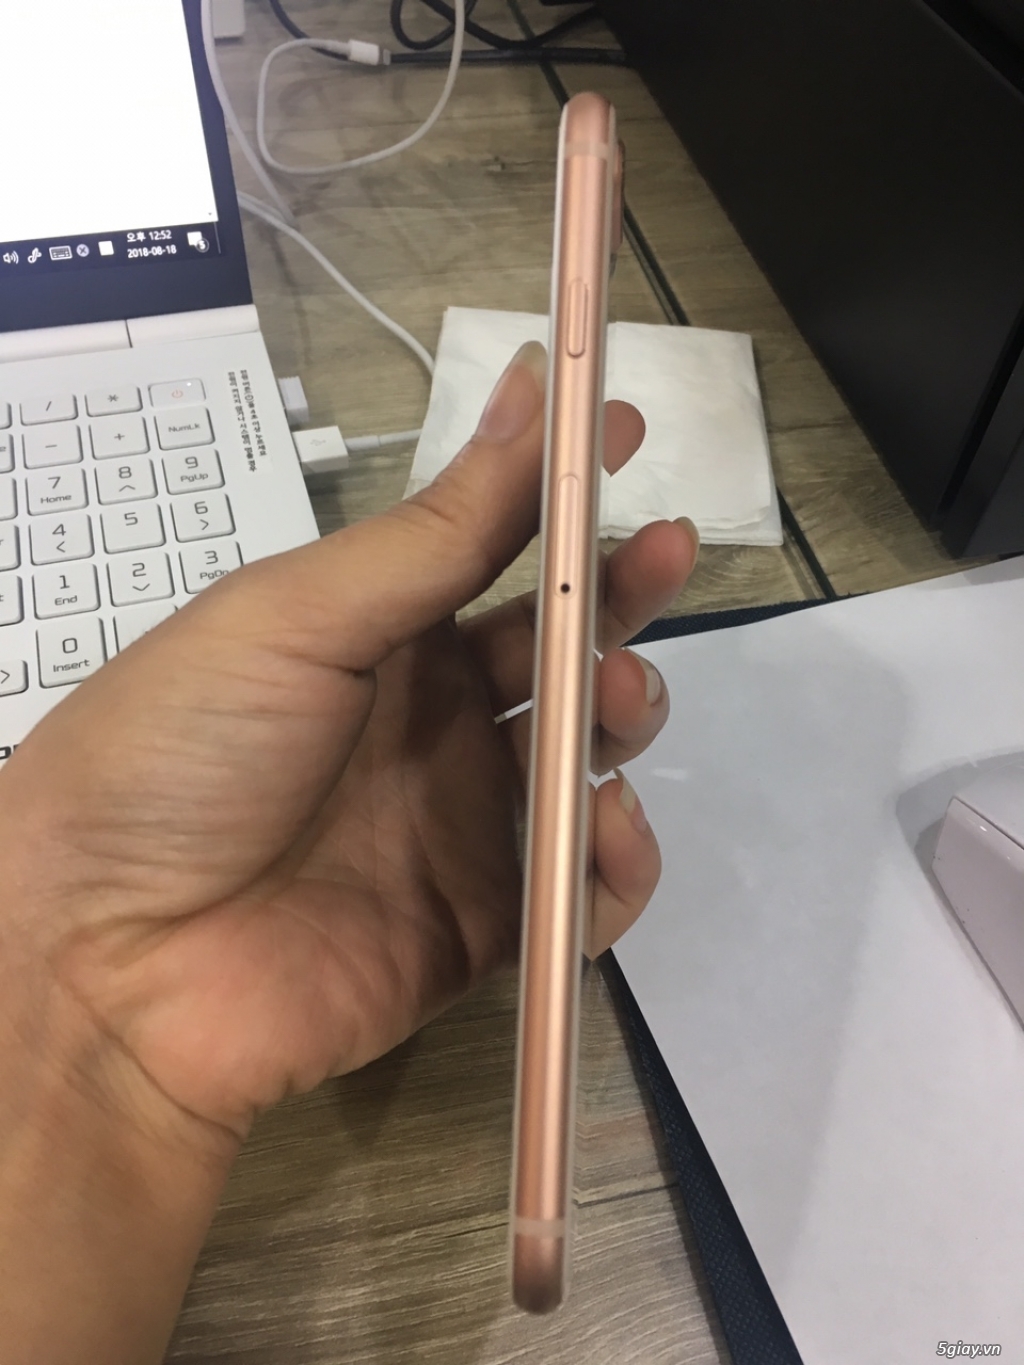 iphone 8plus 64gb vàng hồng đẹp lung linh zin như mới bảo hành - 4